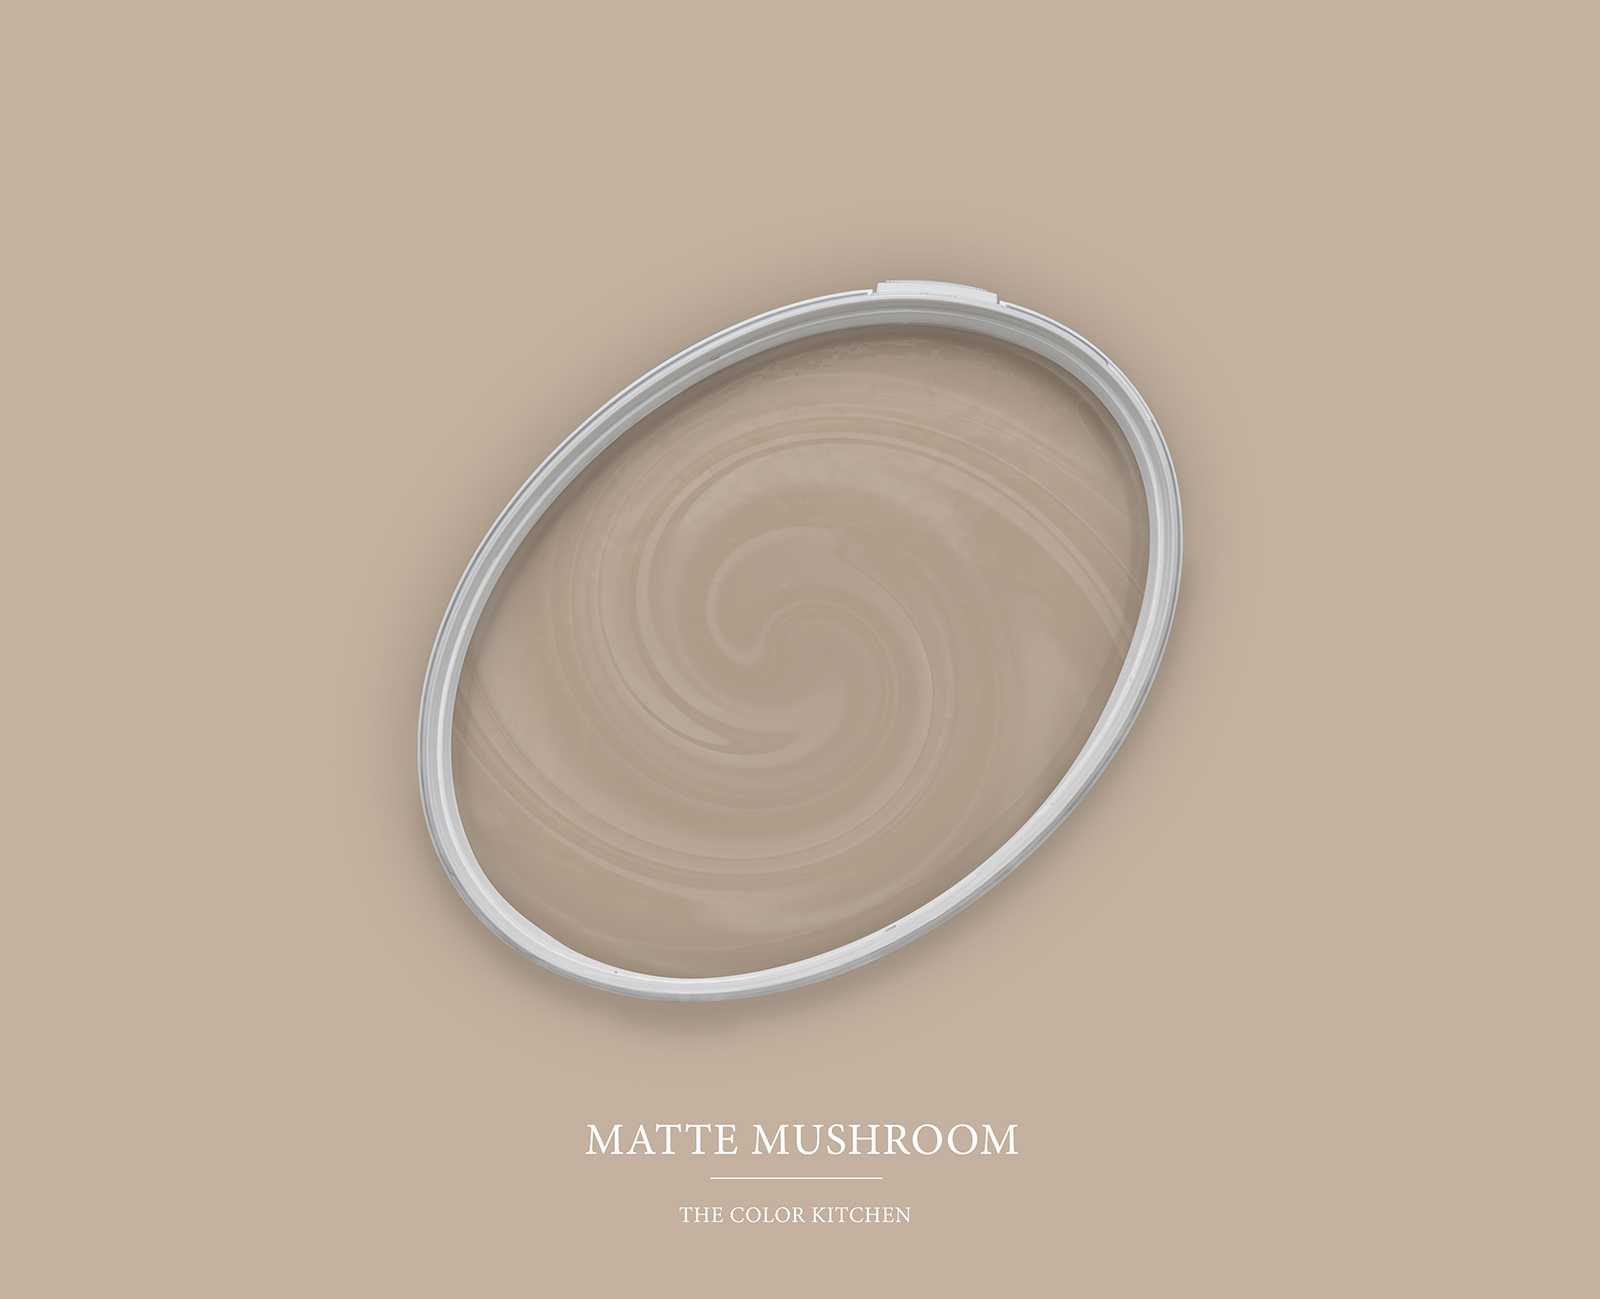 Muurverf TCK6015 »Matte Mushroom« in huiselijk beige – 5,0 liter
